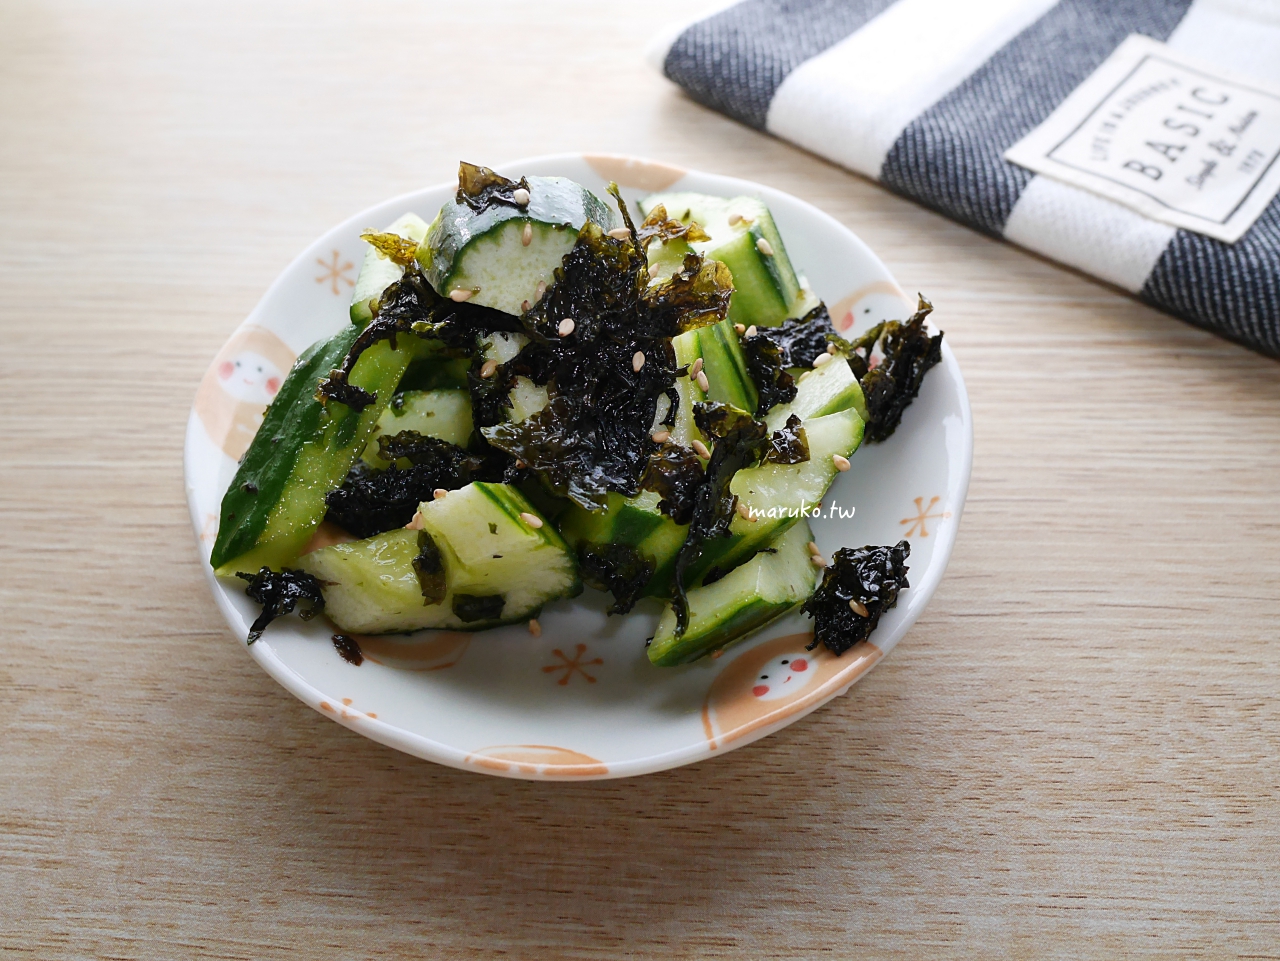 【食譜】韓式海苔涼拌小黃瓜 3分鐘上菜 簡單免開火創意料理 @Maruko與美食有個約會